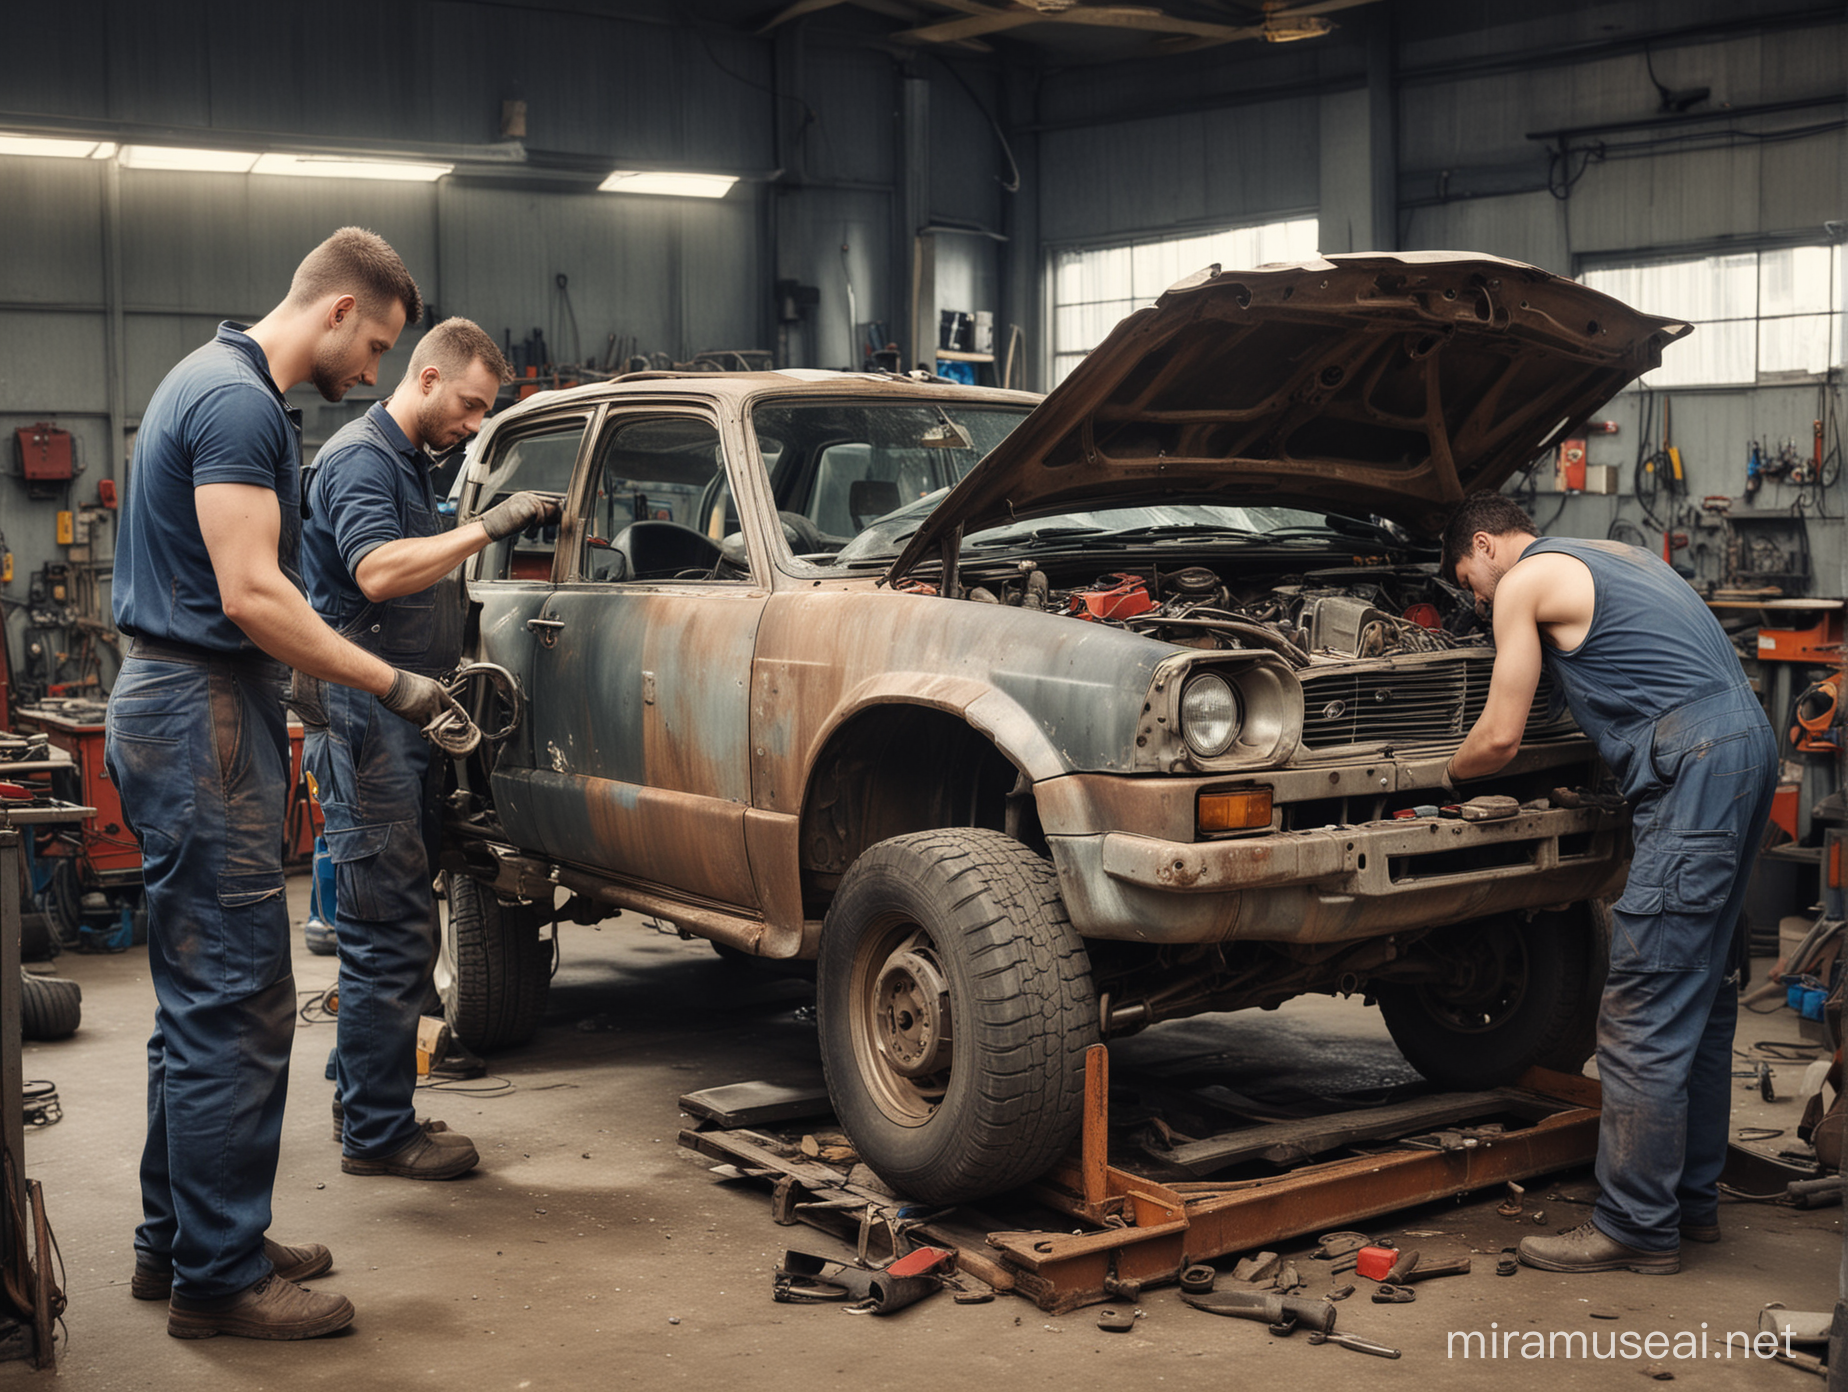 Hombres mecánicos reparando un automóvil descompuesto en taller.